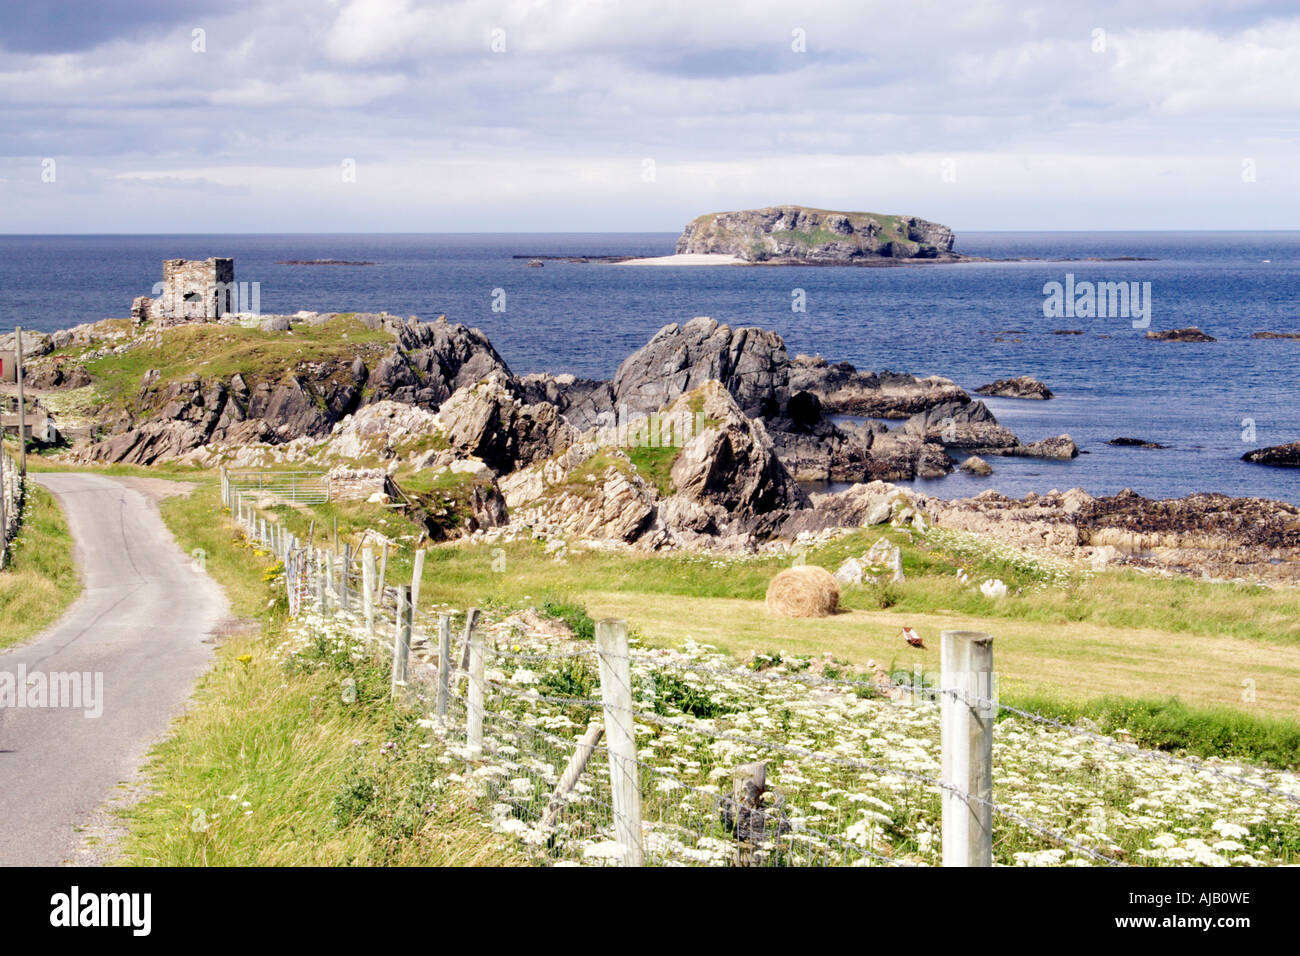 Glasheady island vu de l'île de Doagh, Donegal, Irlande, Inishowen. Banque D'Images